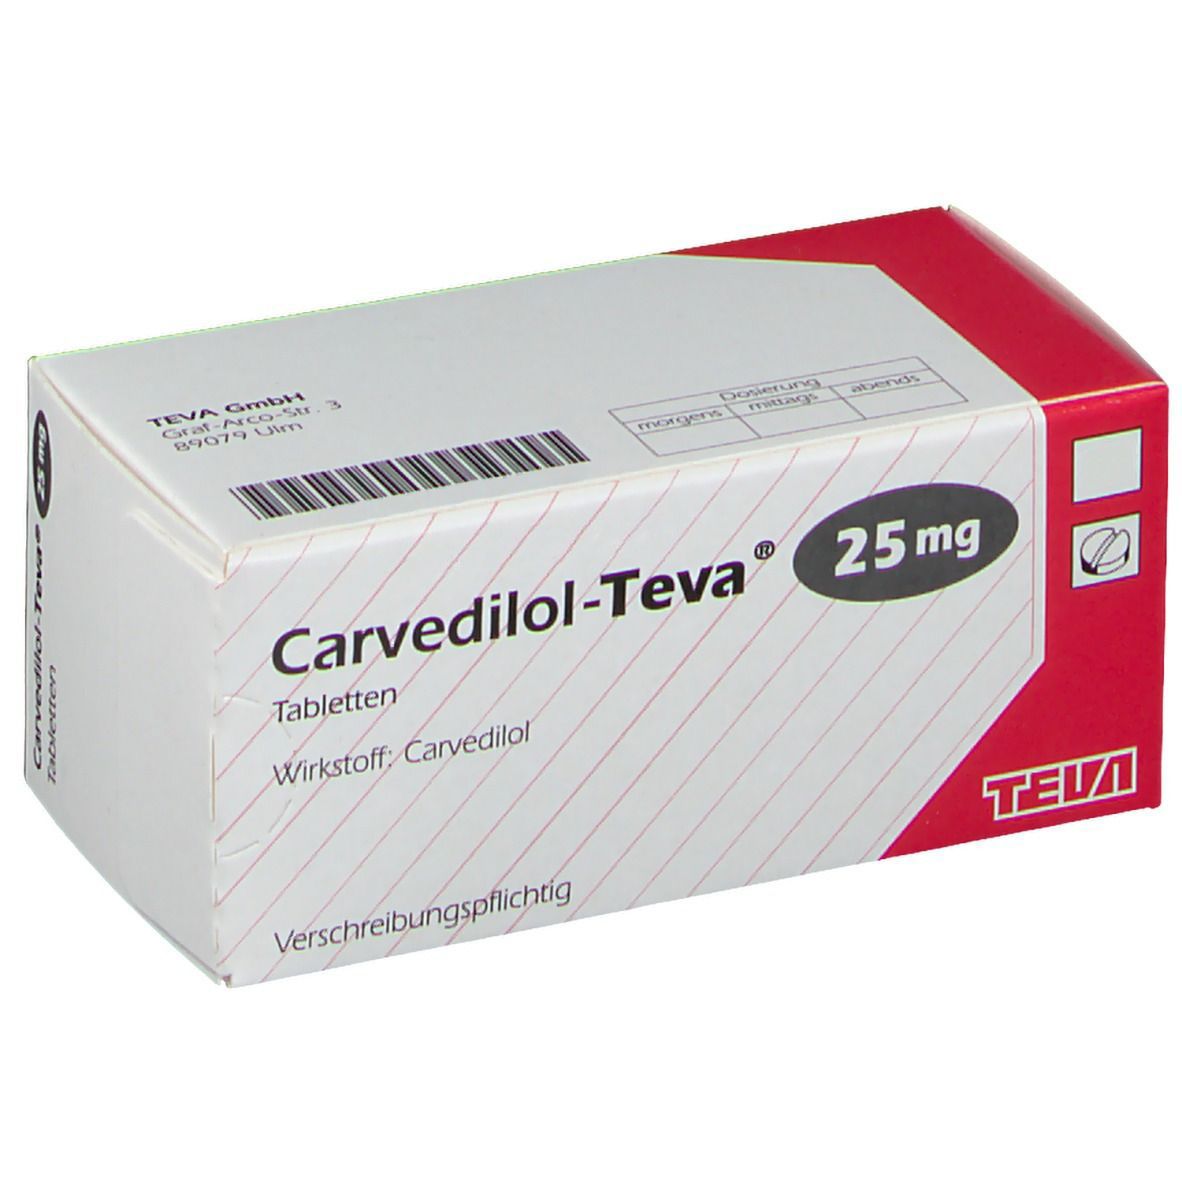 Carvedilol-Teva® 25 mg